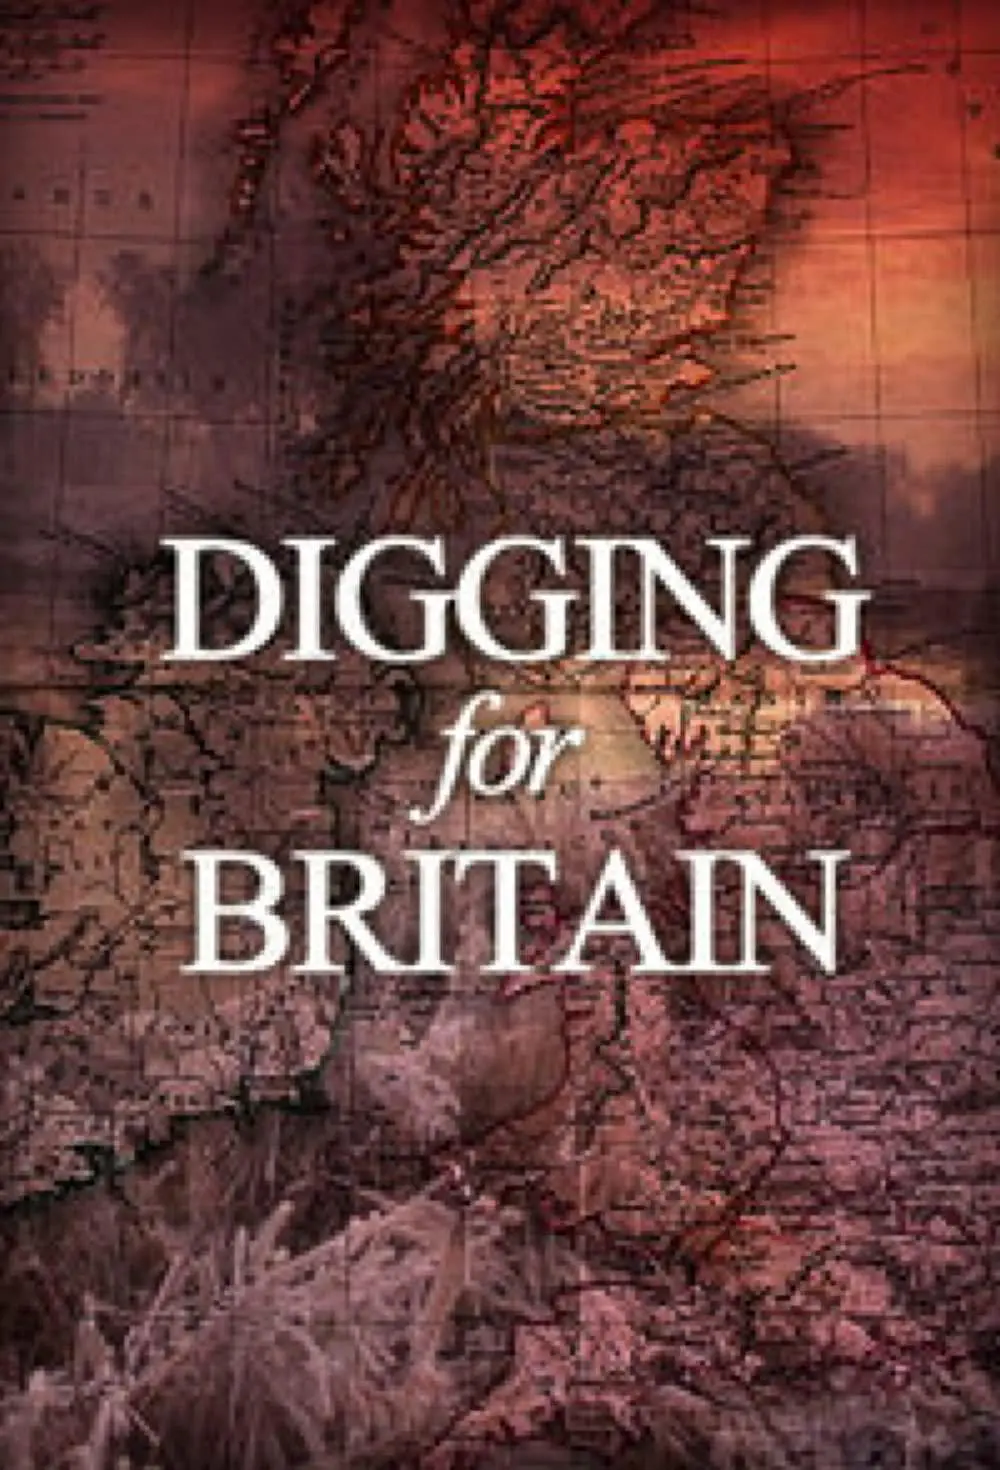 免费在线观看完整版欧美剧《挖掘英国 第一季》